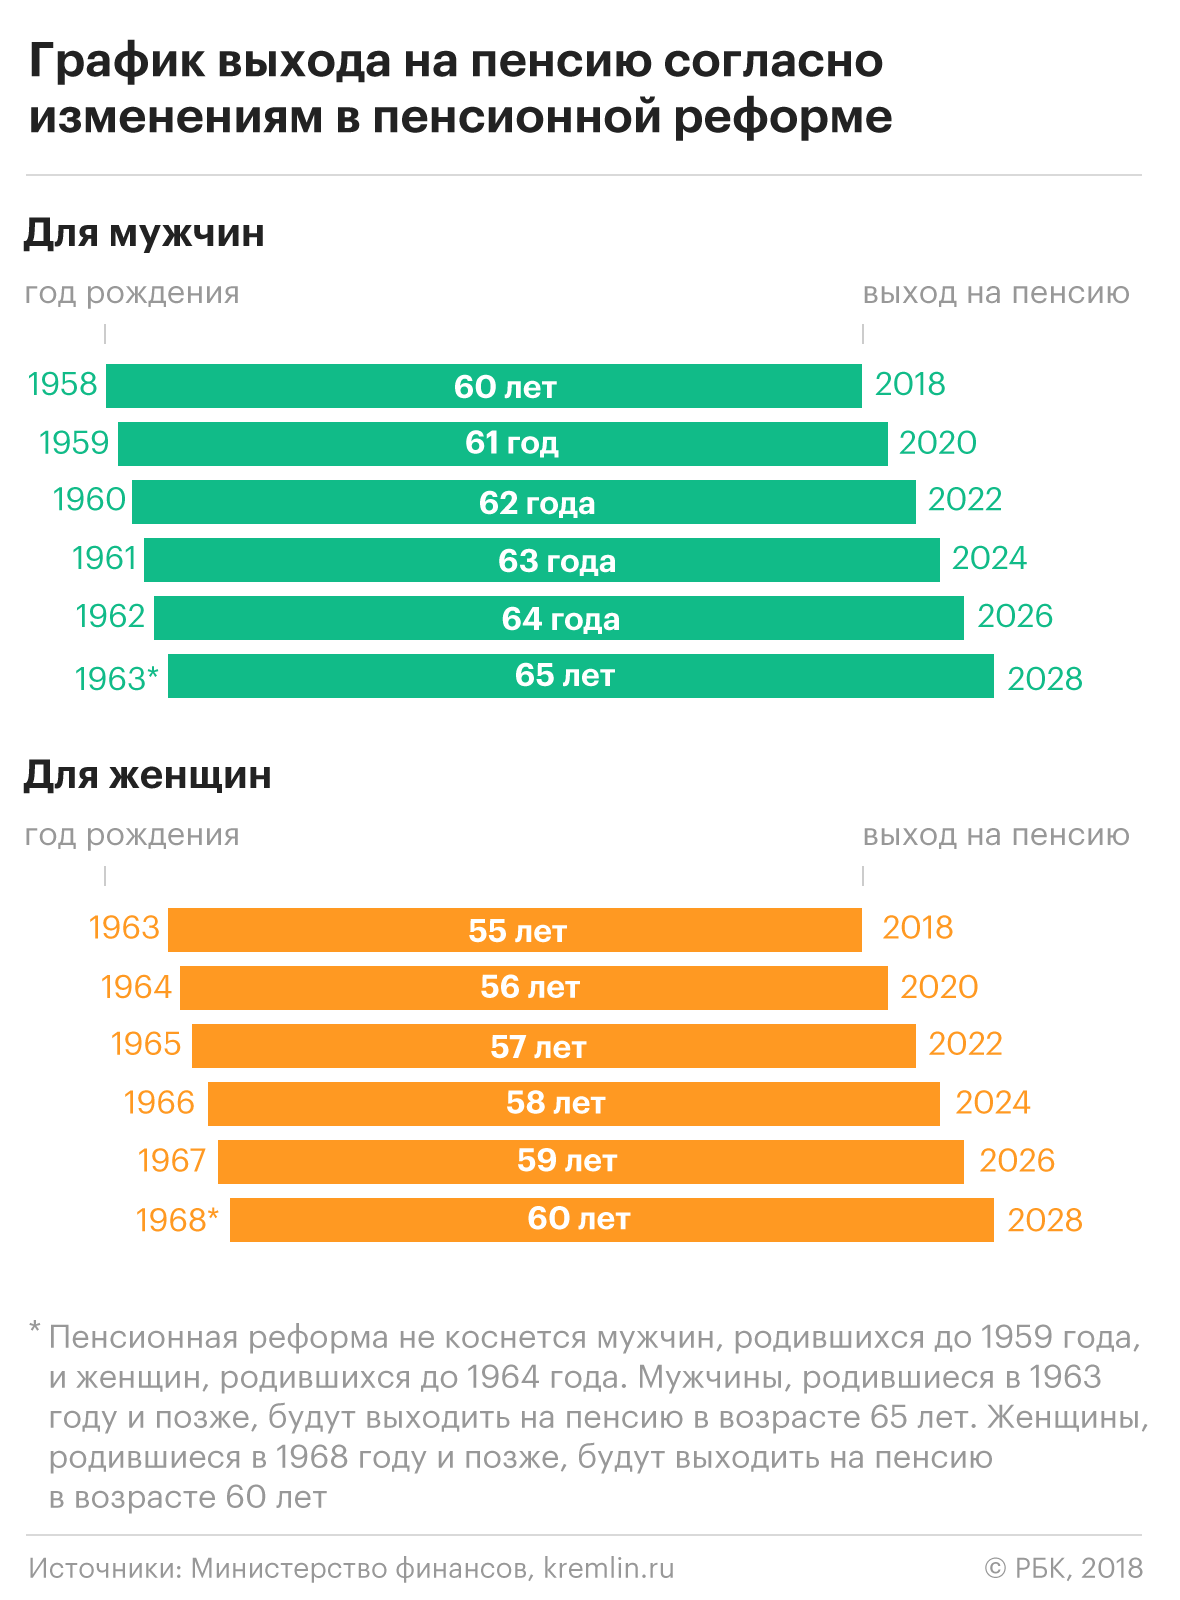 Как Владимир Путин изменил пенсионную реформу. Главное